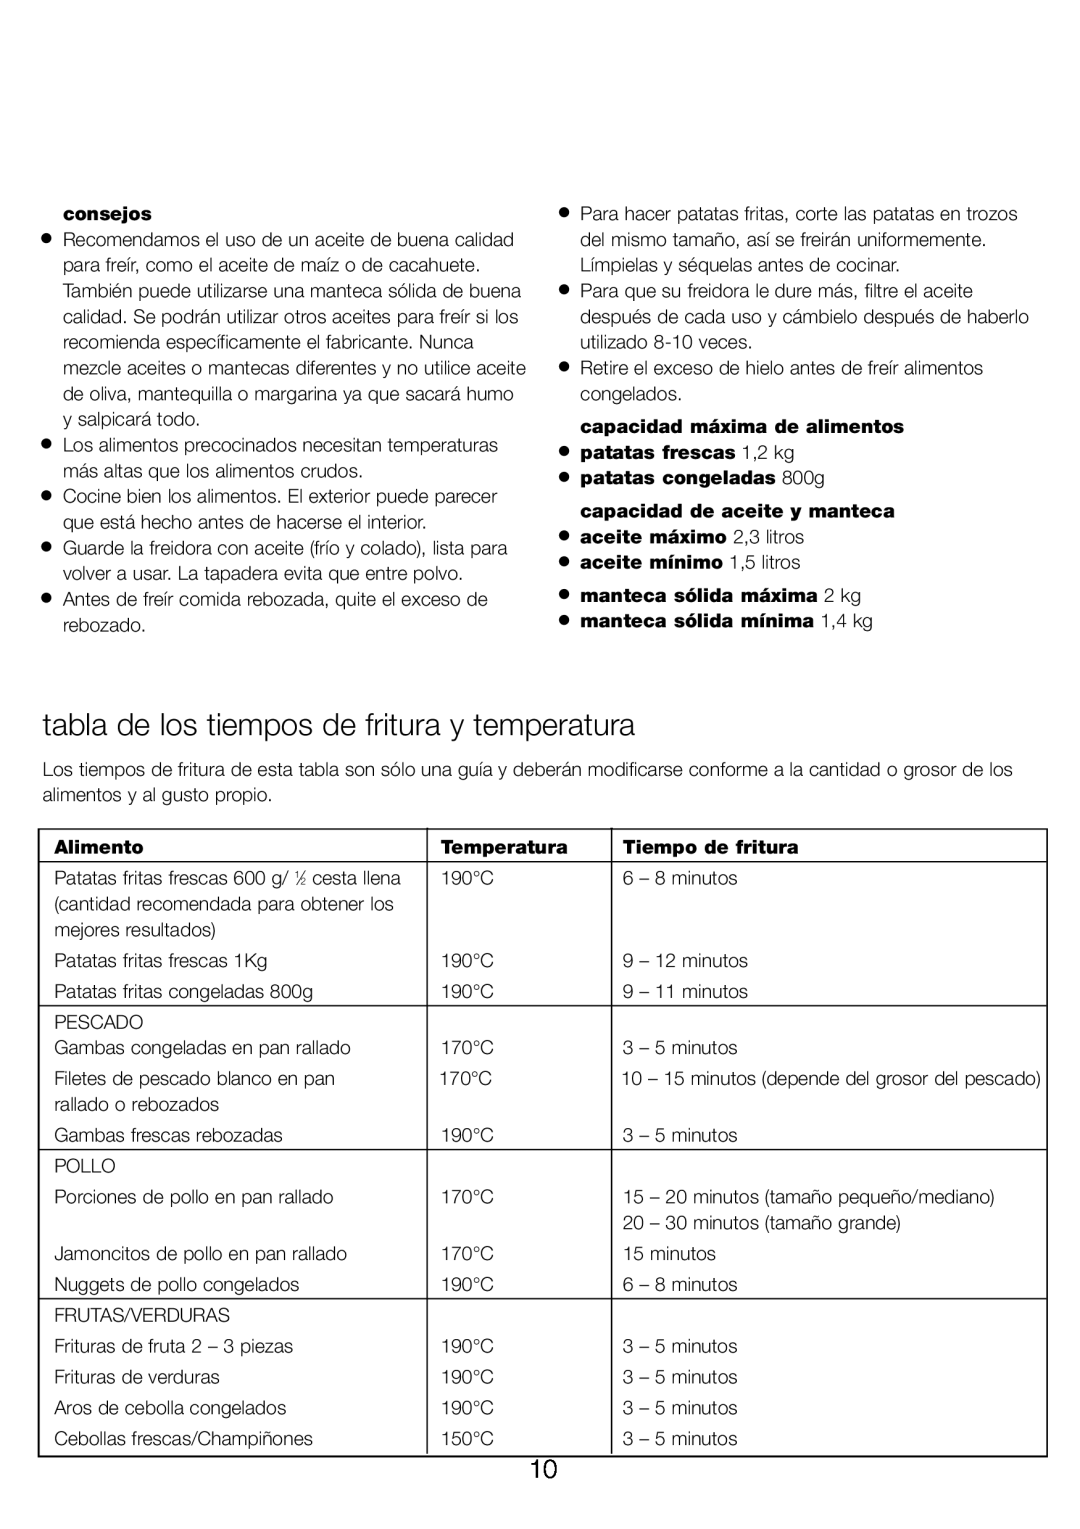 Kenwood DEEP FRYER manual tabla de los tiempos de fritura y temperatura, consejos, Tiempo de fritura, Alimento, Temperatura 